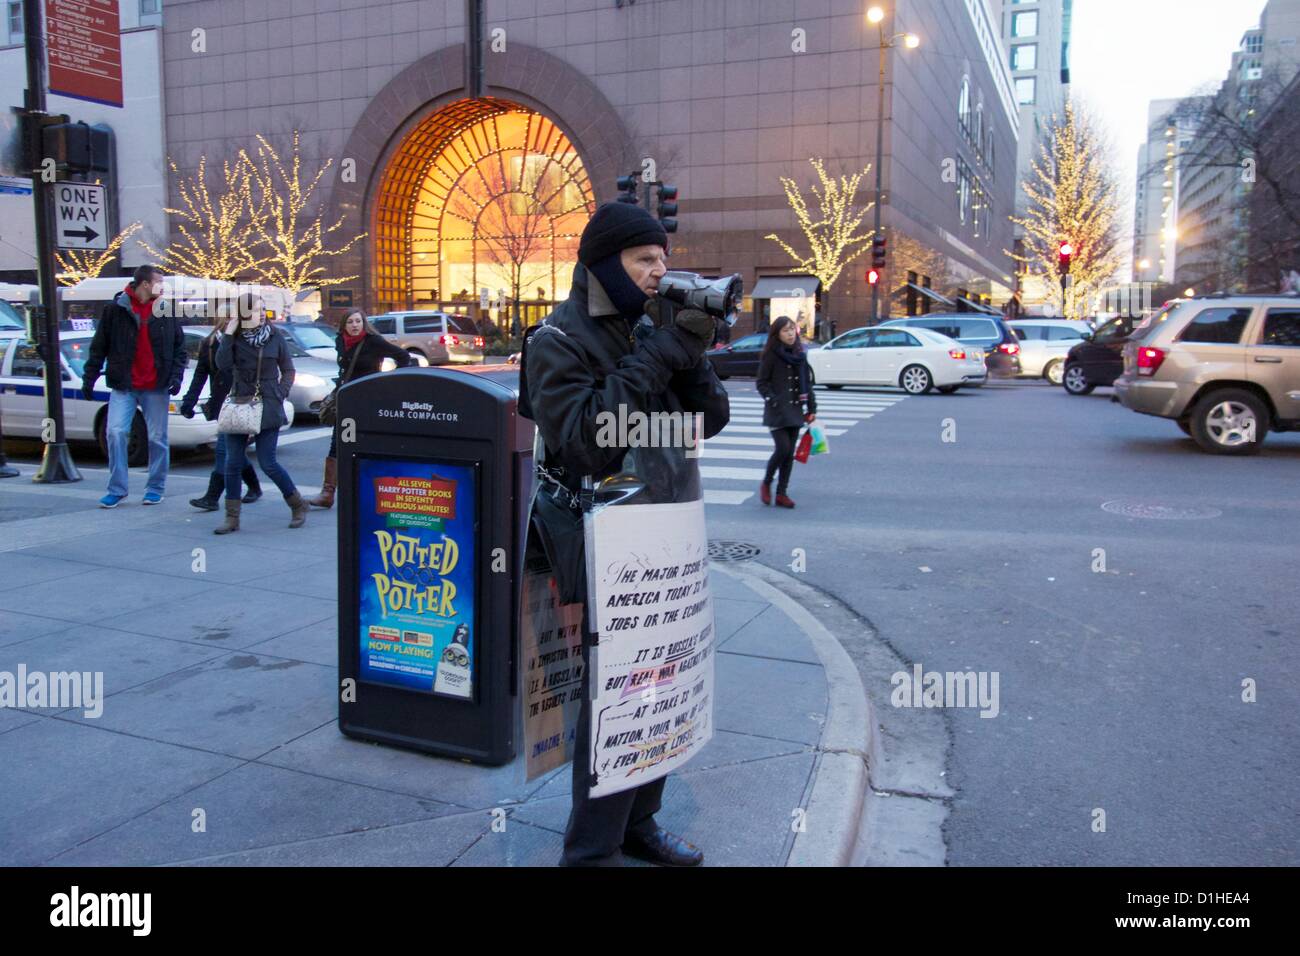 Chicago in Illinois il 22 dicembre 2012. Un uomo che indossa un segno e utilizza un bullhorn per segnalare la presenza di una minaccia per gli Stati Uniti dalla Russia. Gli acquirenti di vacanza su Michigan Avenue ignorato il punto di vista insolito. Foto Stock